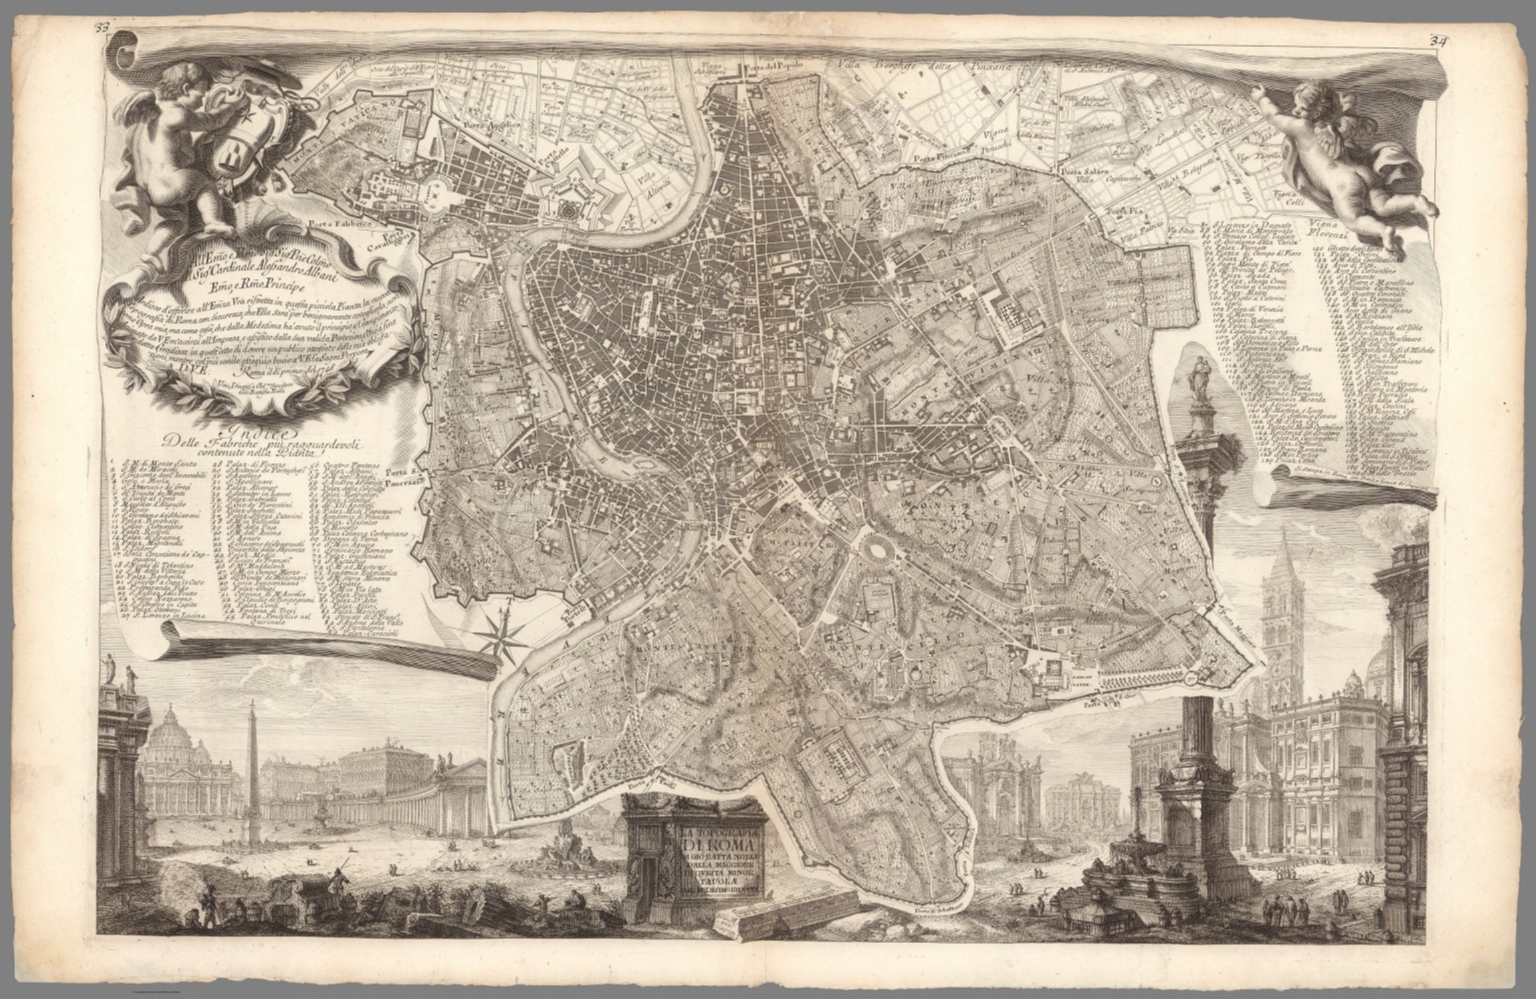 La topografia di Roma - David Rumsey Historical Map Collection